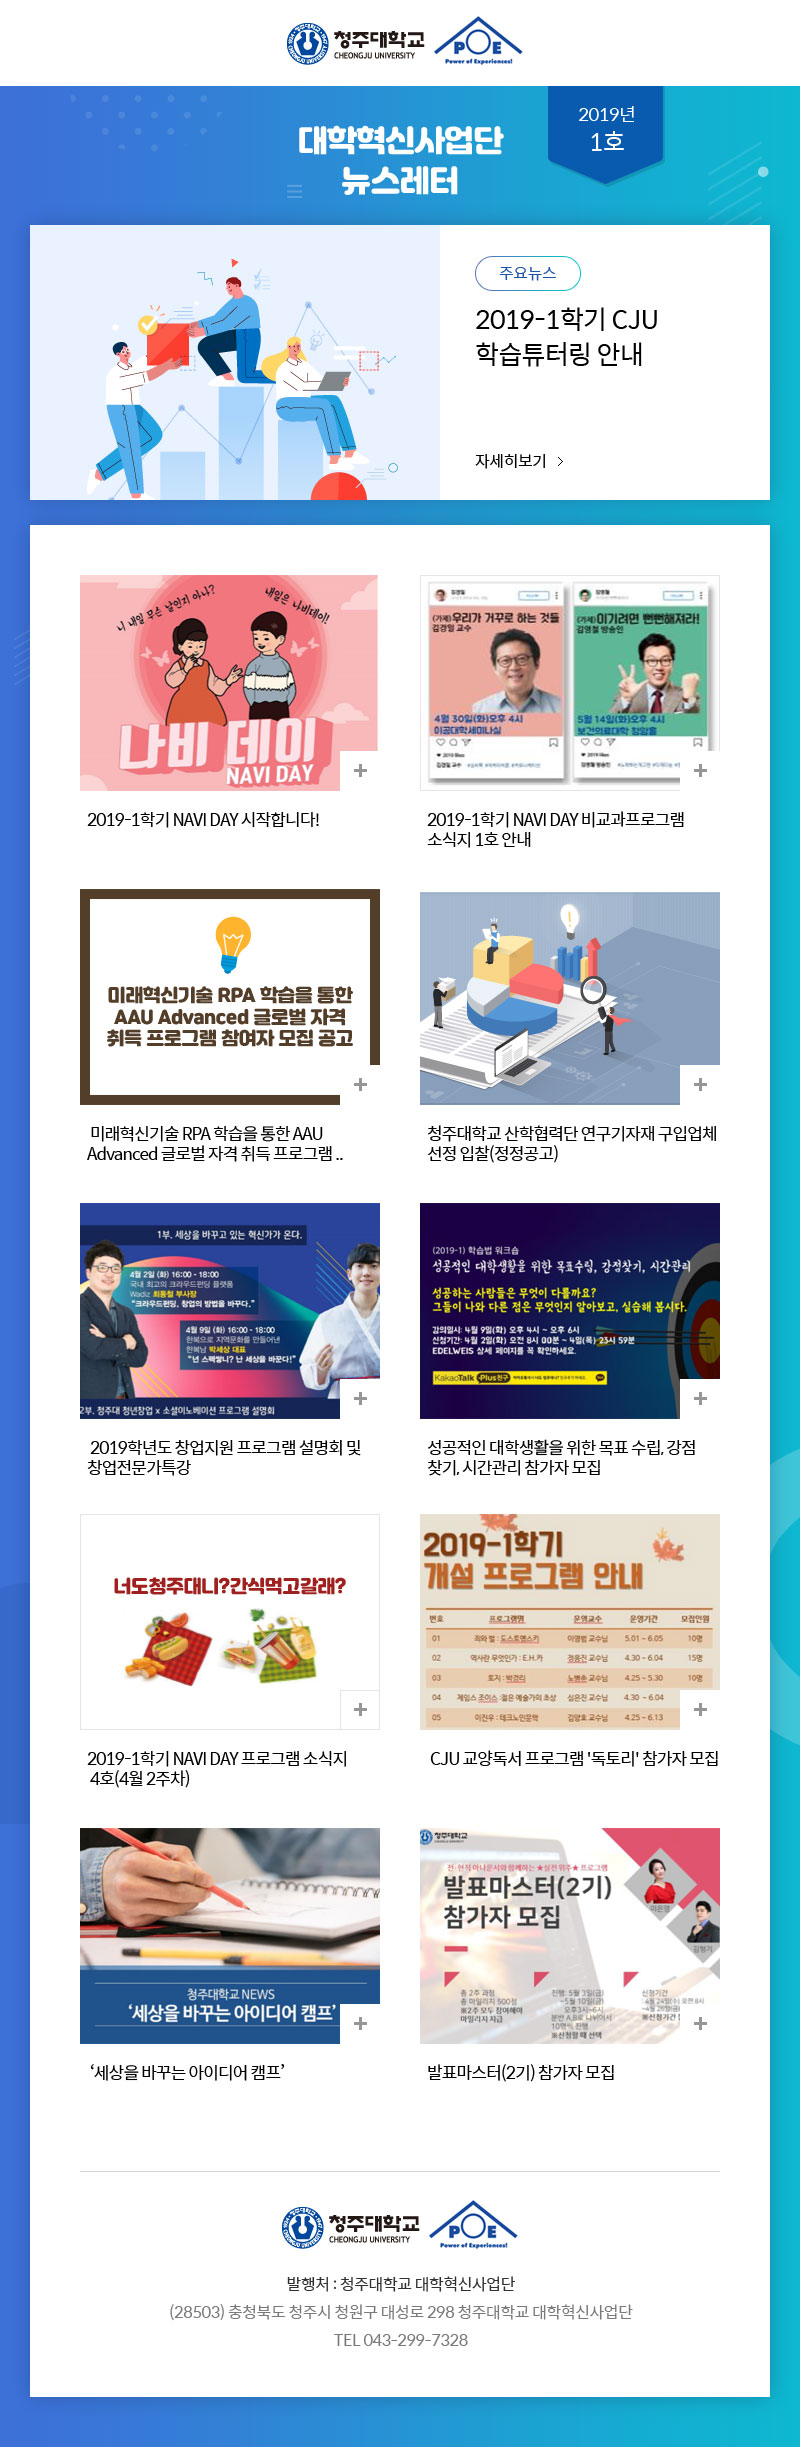 대학혁신사업단 뉴스레터 2019년 1호 뉴스레터